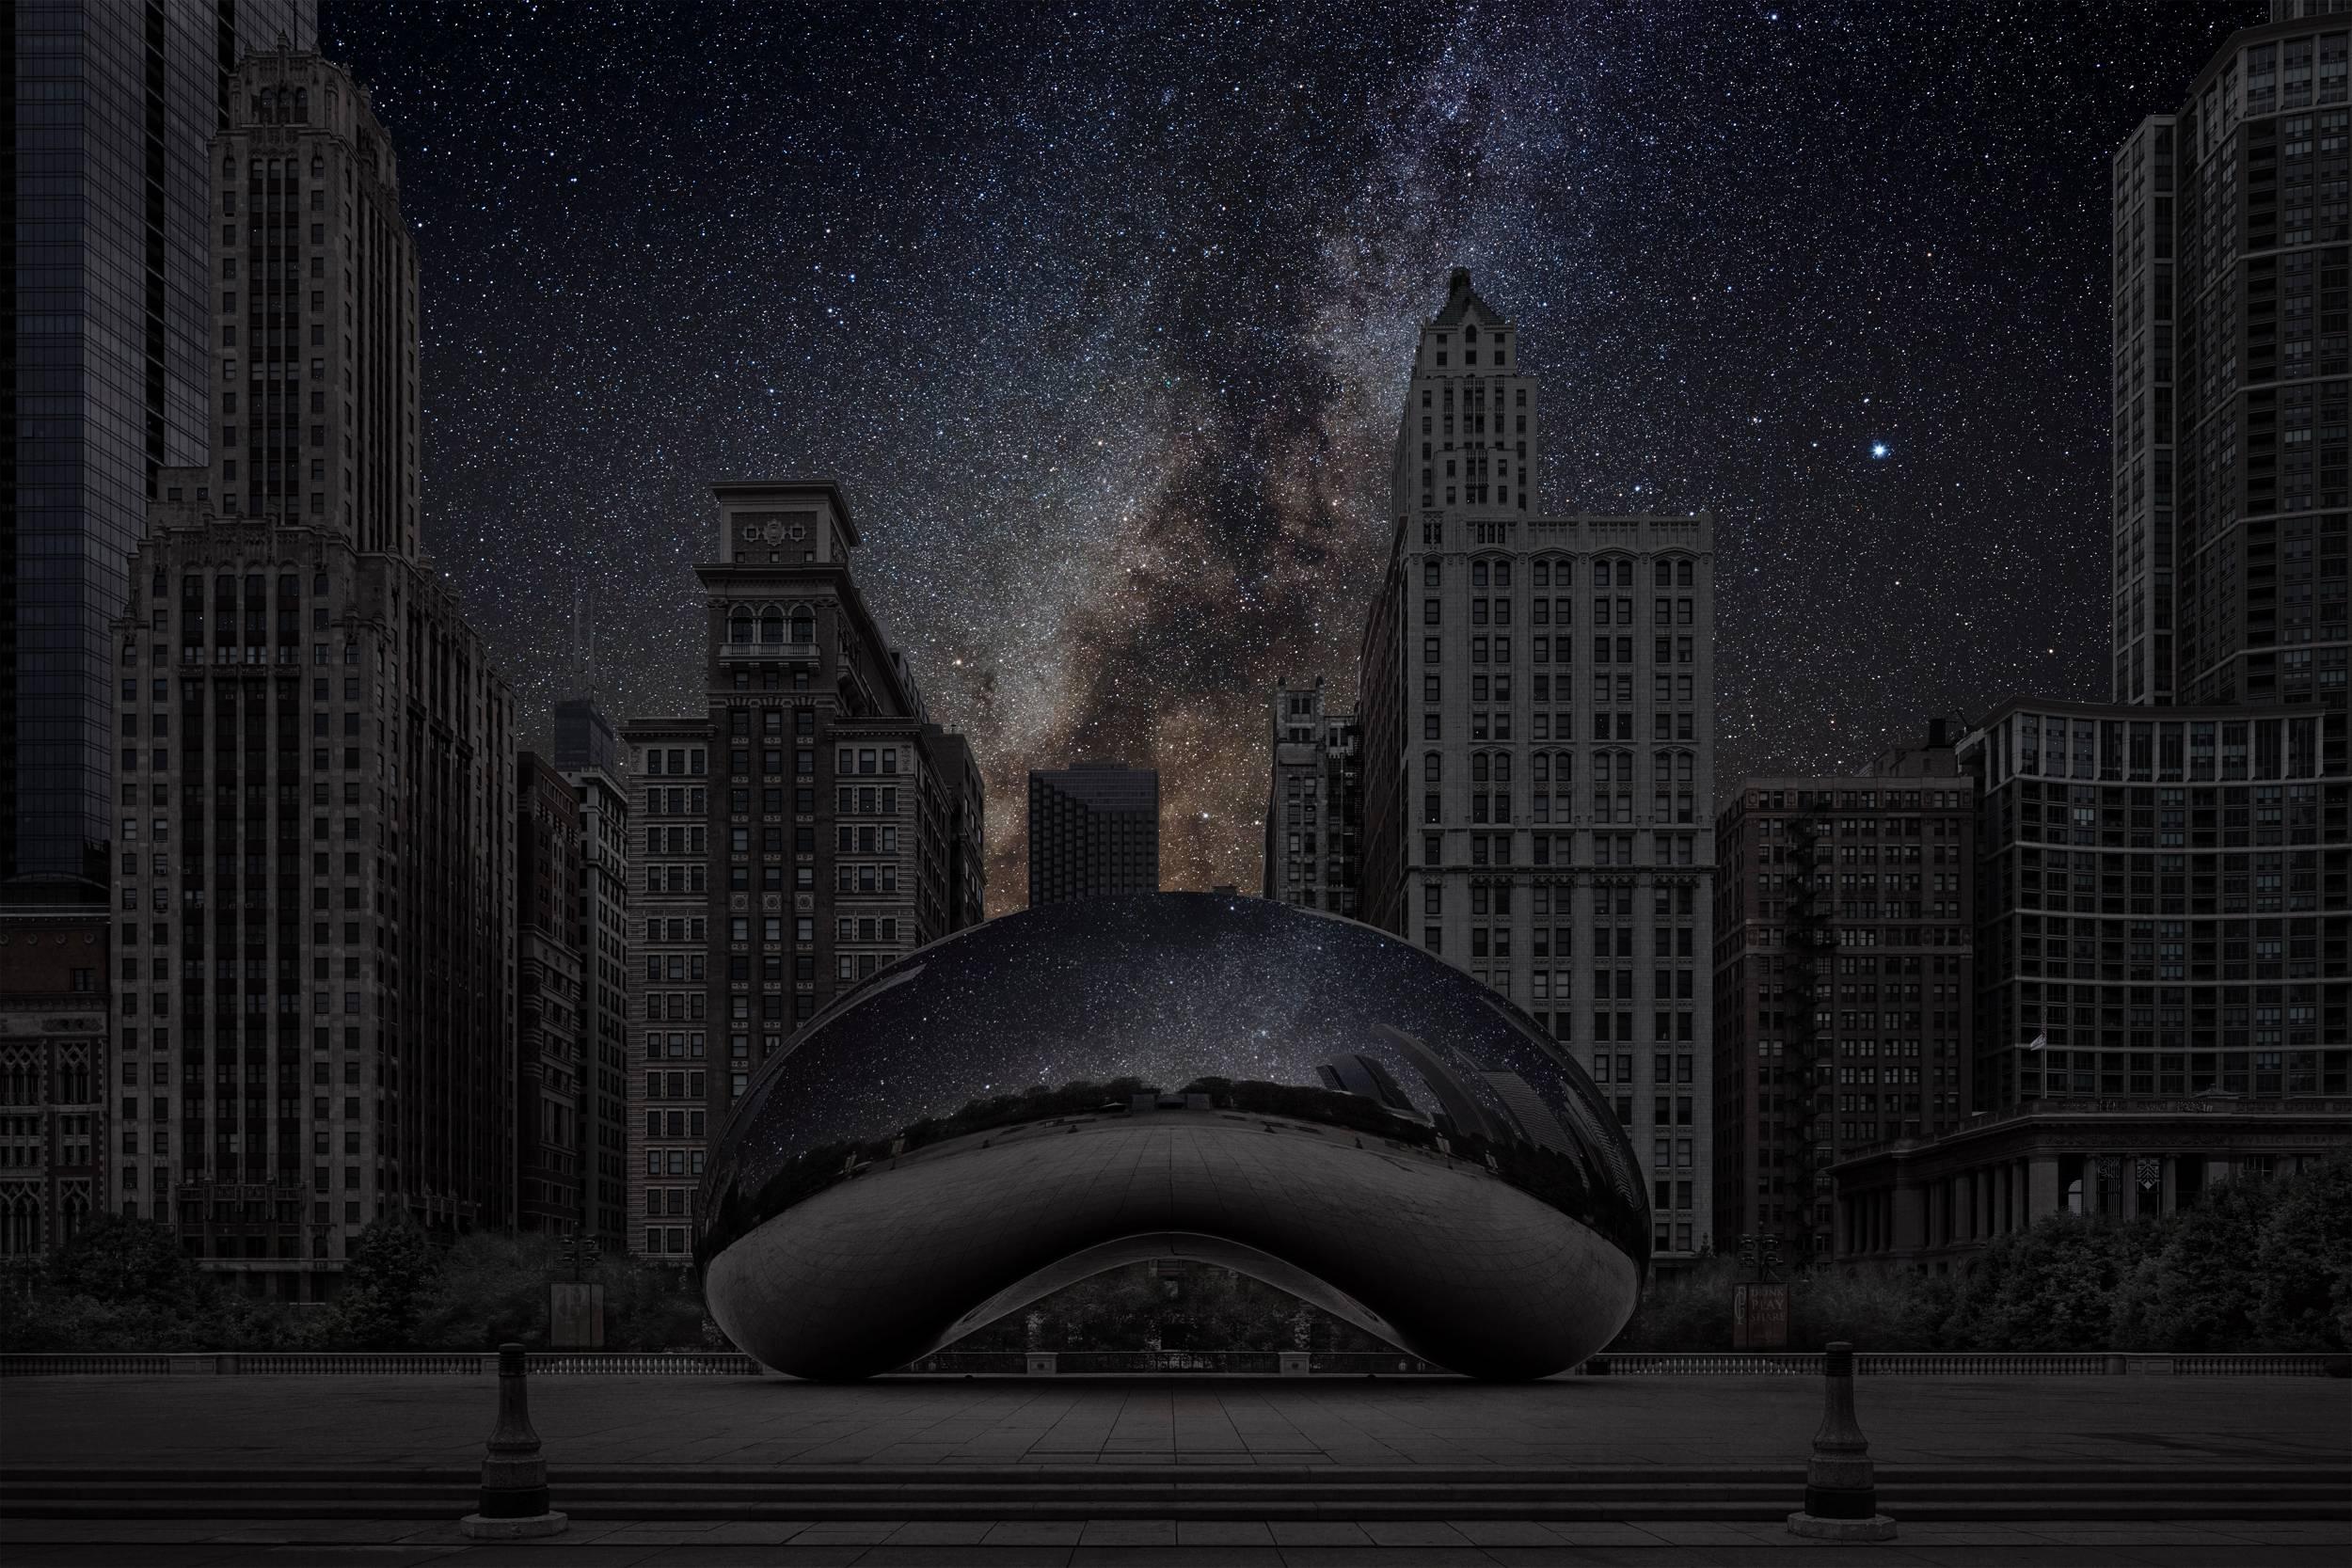 Thierry Cohen Landscape Photograph - Chicago 41° 52’ 57” N 2015-09-17 LST 0:05